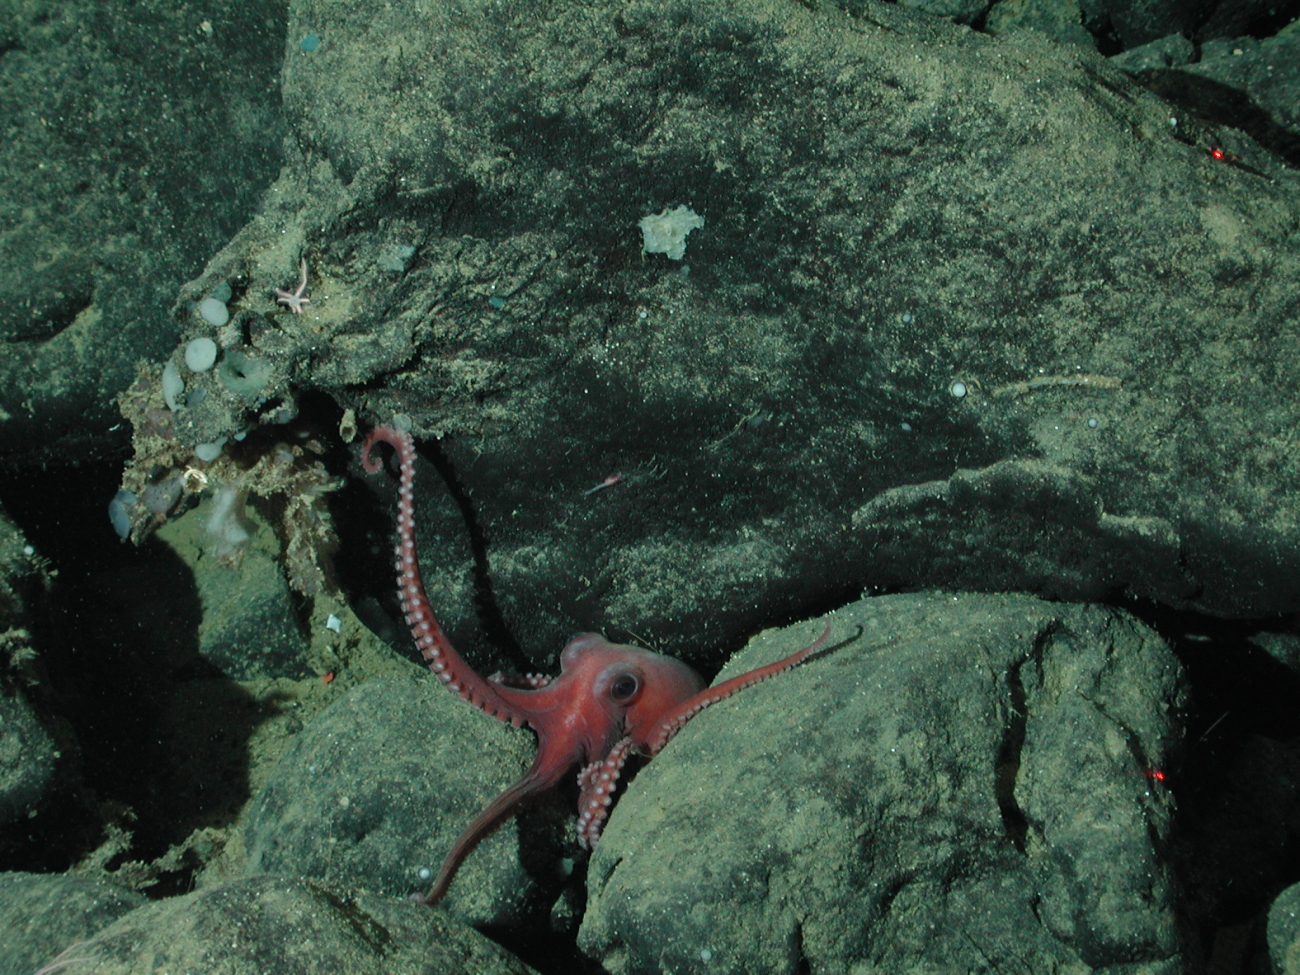 Benthic octopus (Benthoctopus sp